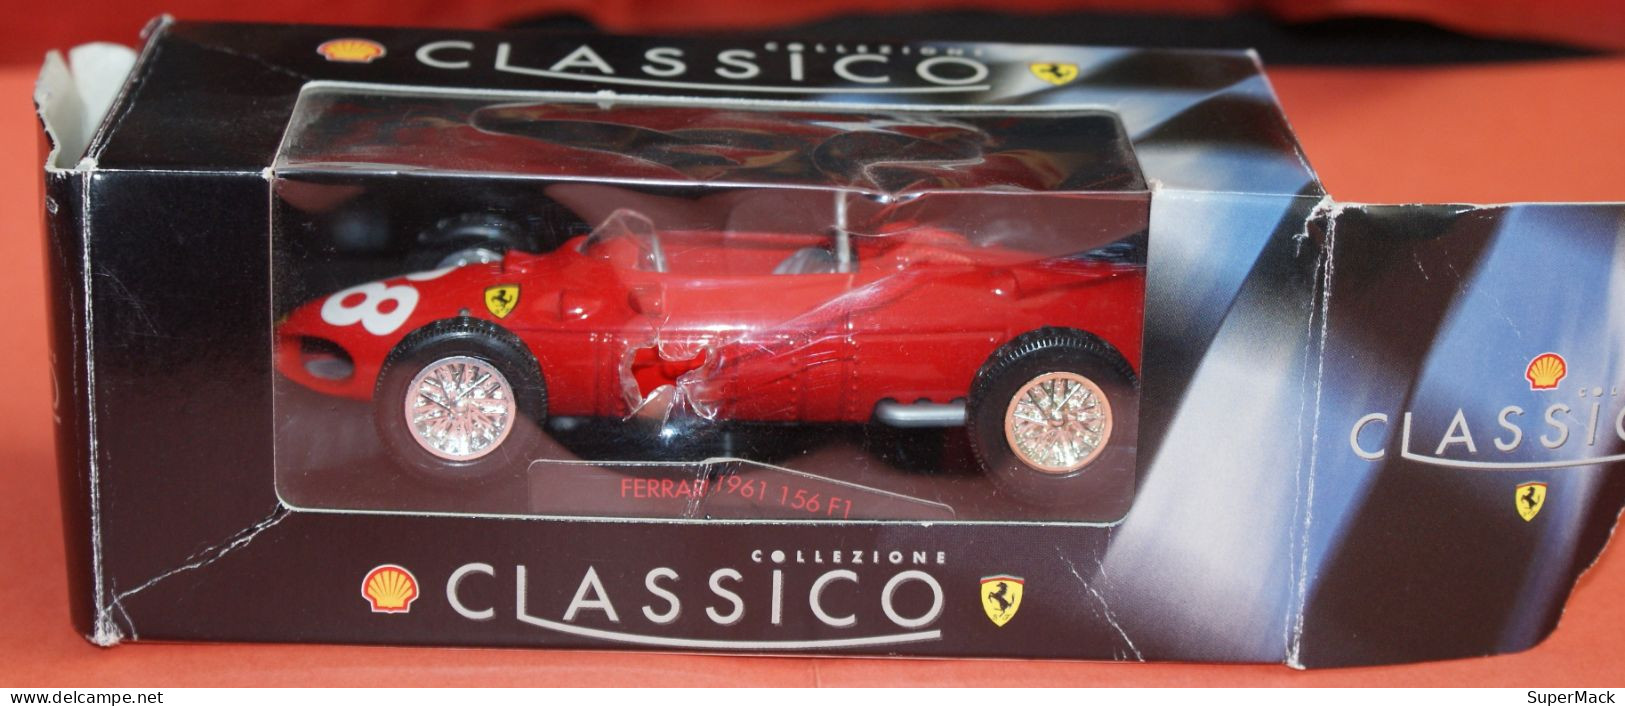 SHELL Classico Collezione - Ferrari 1961 156 F1 - Echelle 1:35 ### NEUVE ### - Scala 1:32